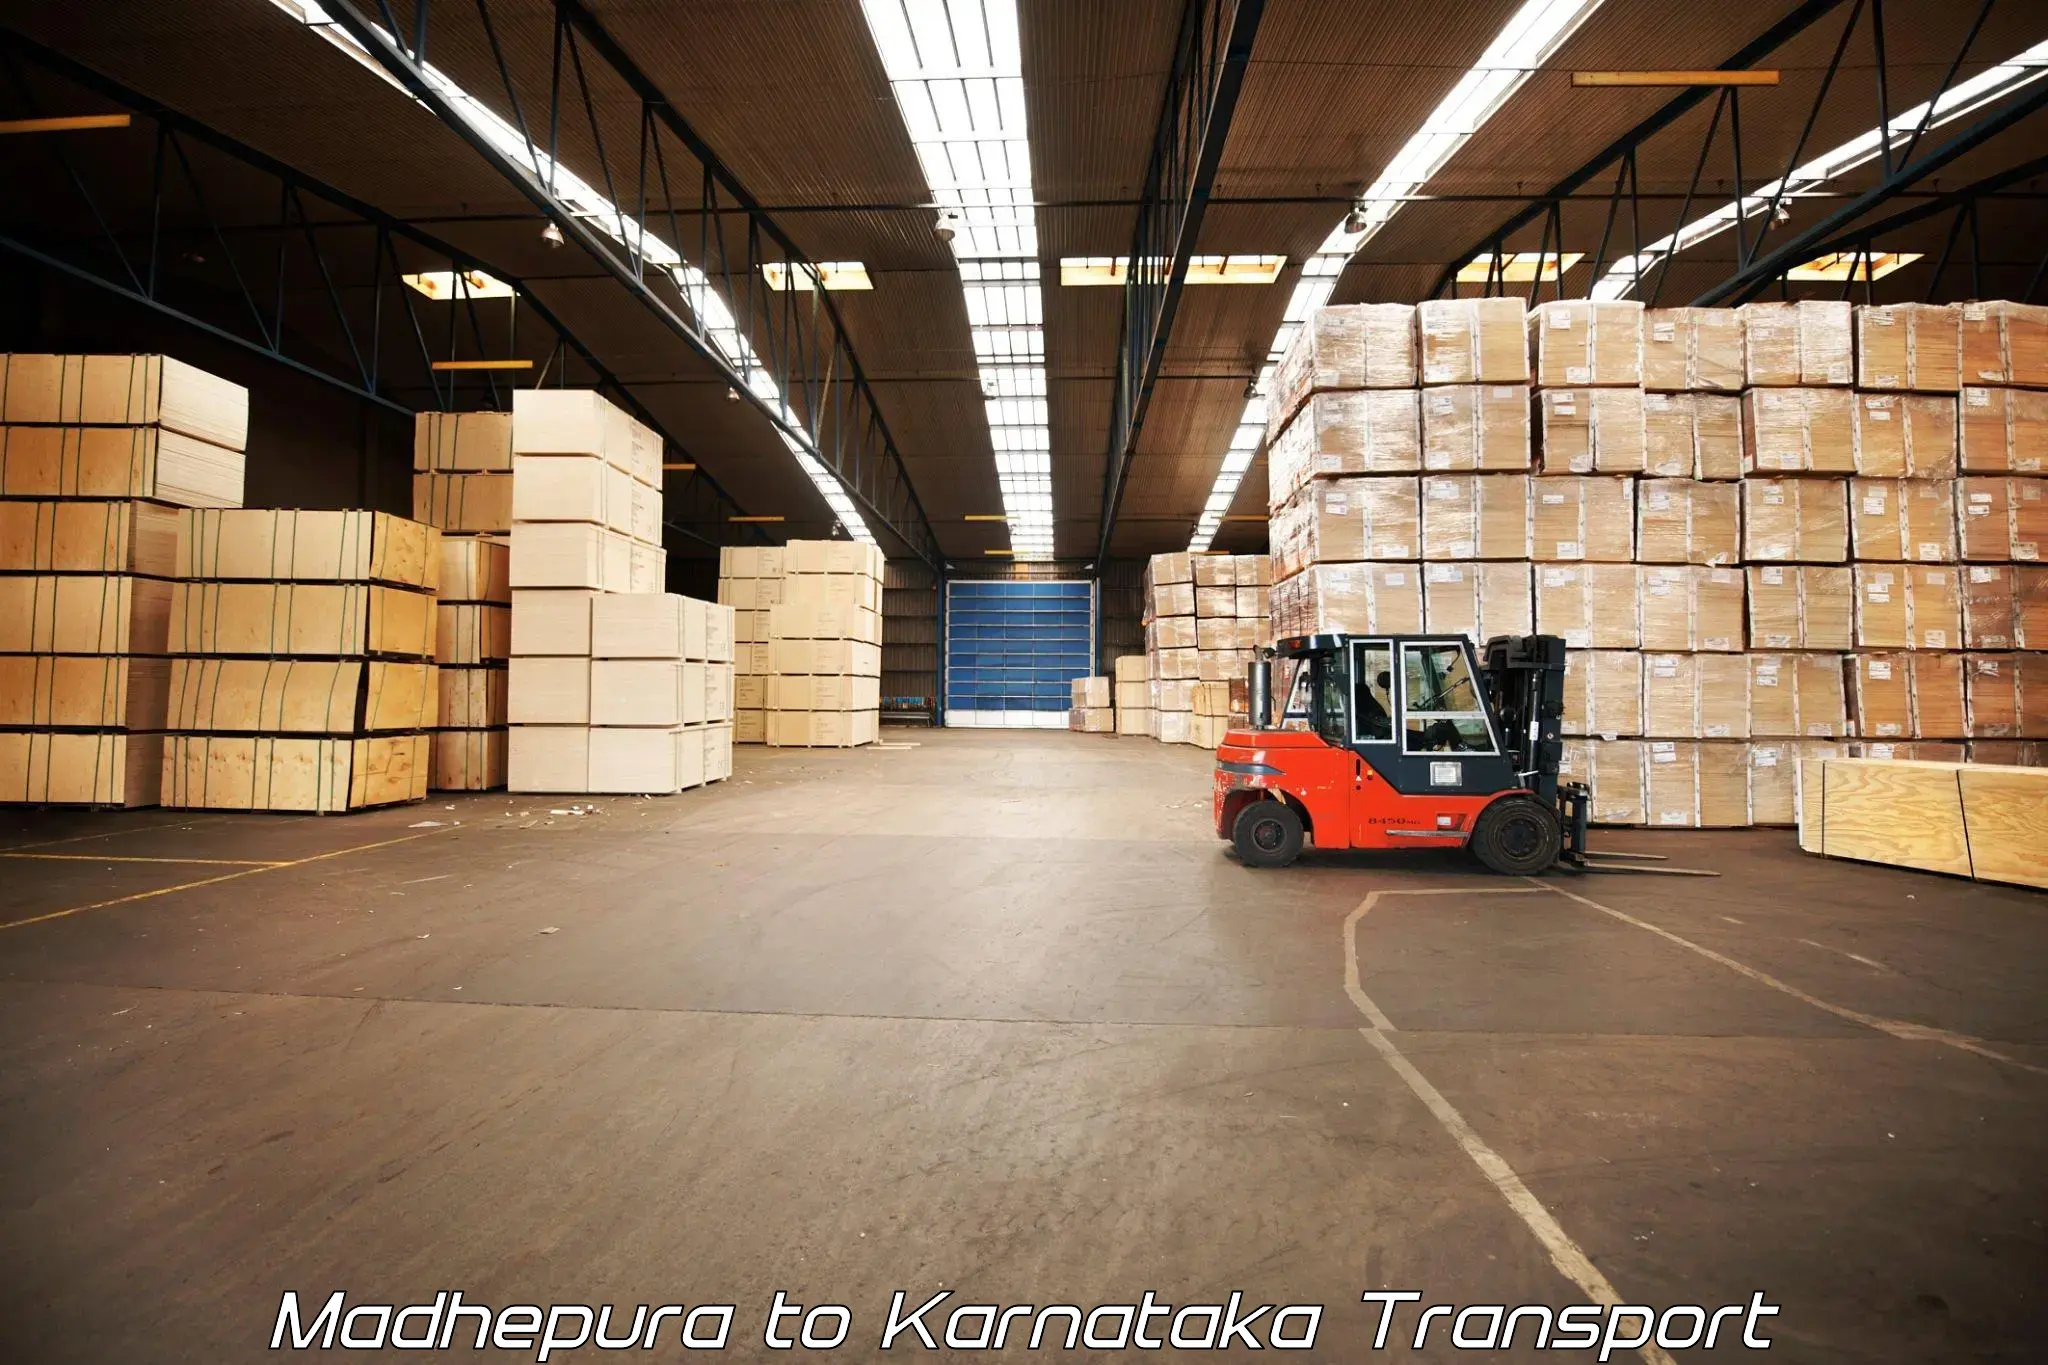 Interstate transport services Madhepura to Kanjarakatte